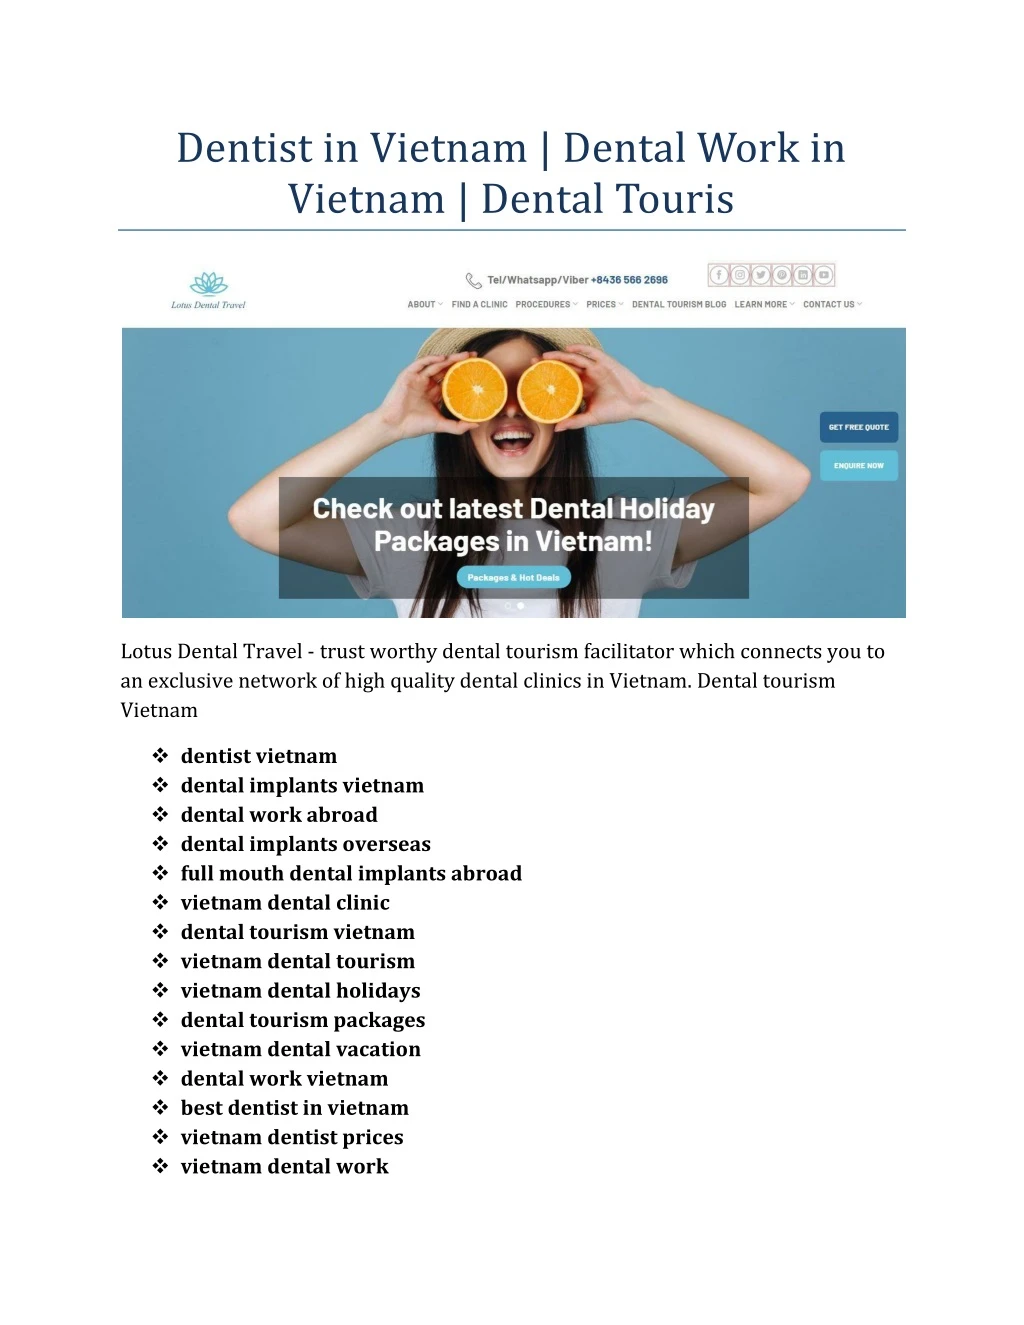 dentist in vietnam dental work in vietnam dental